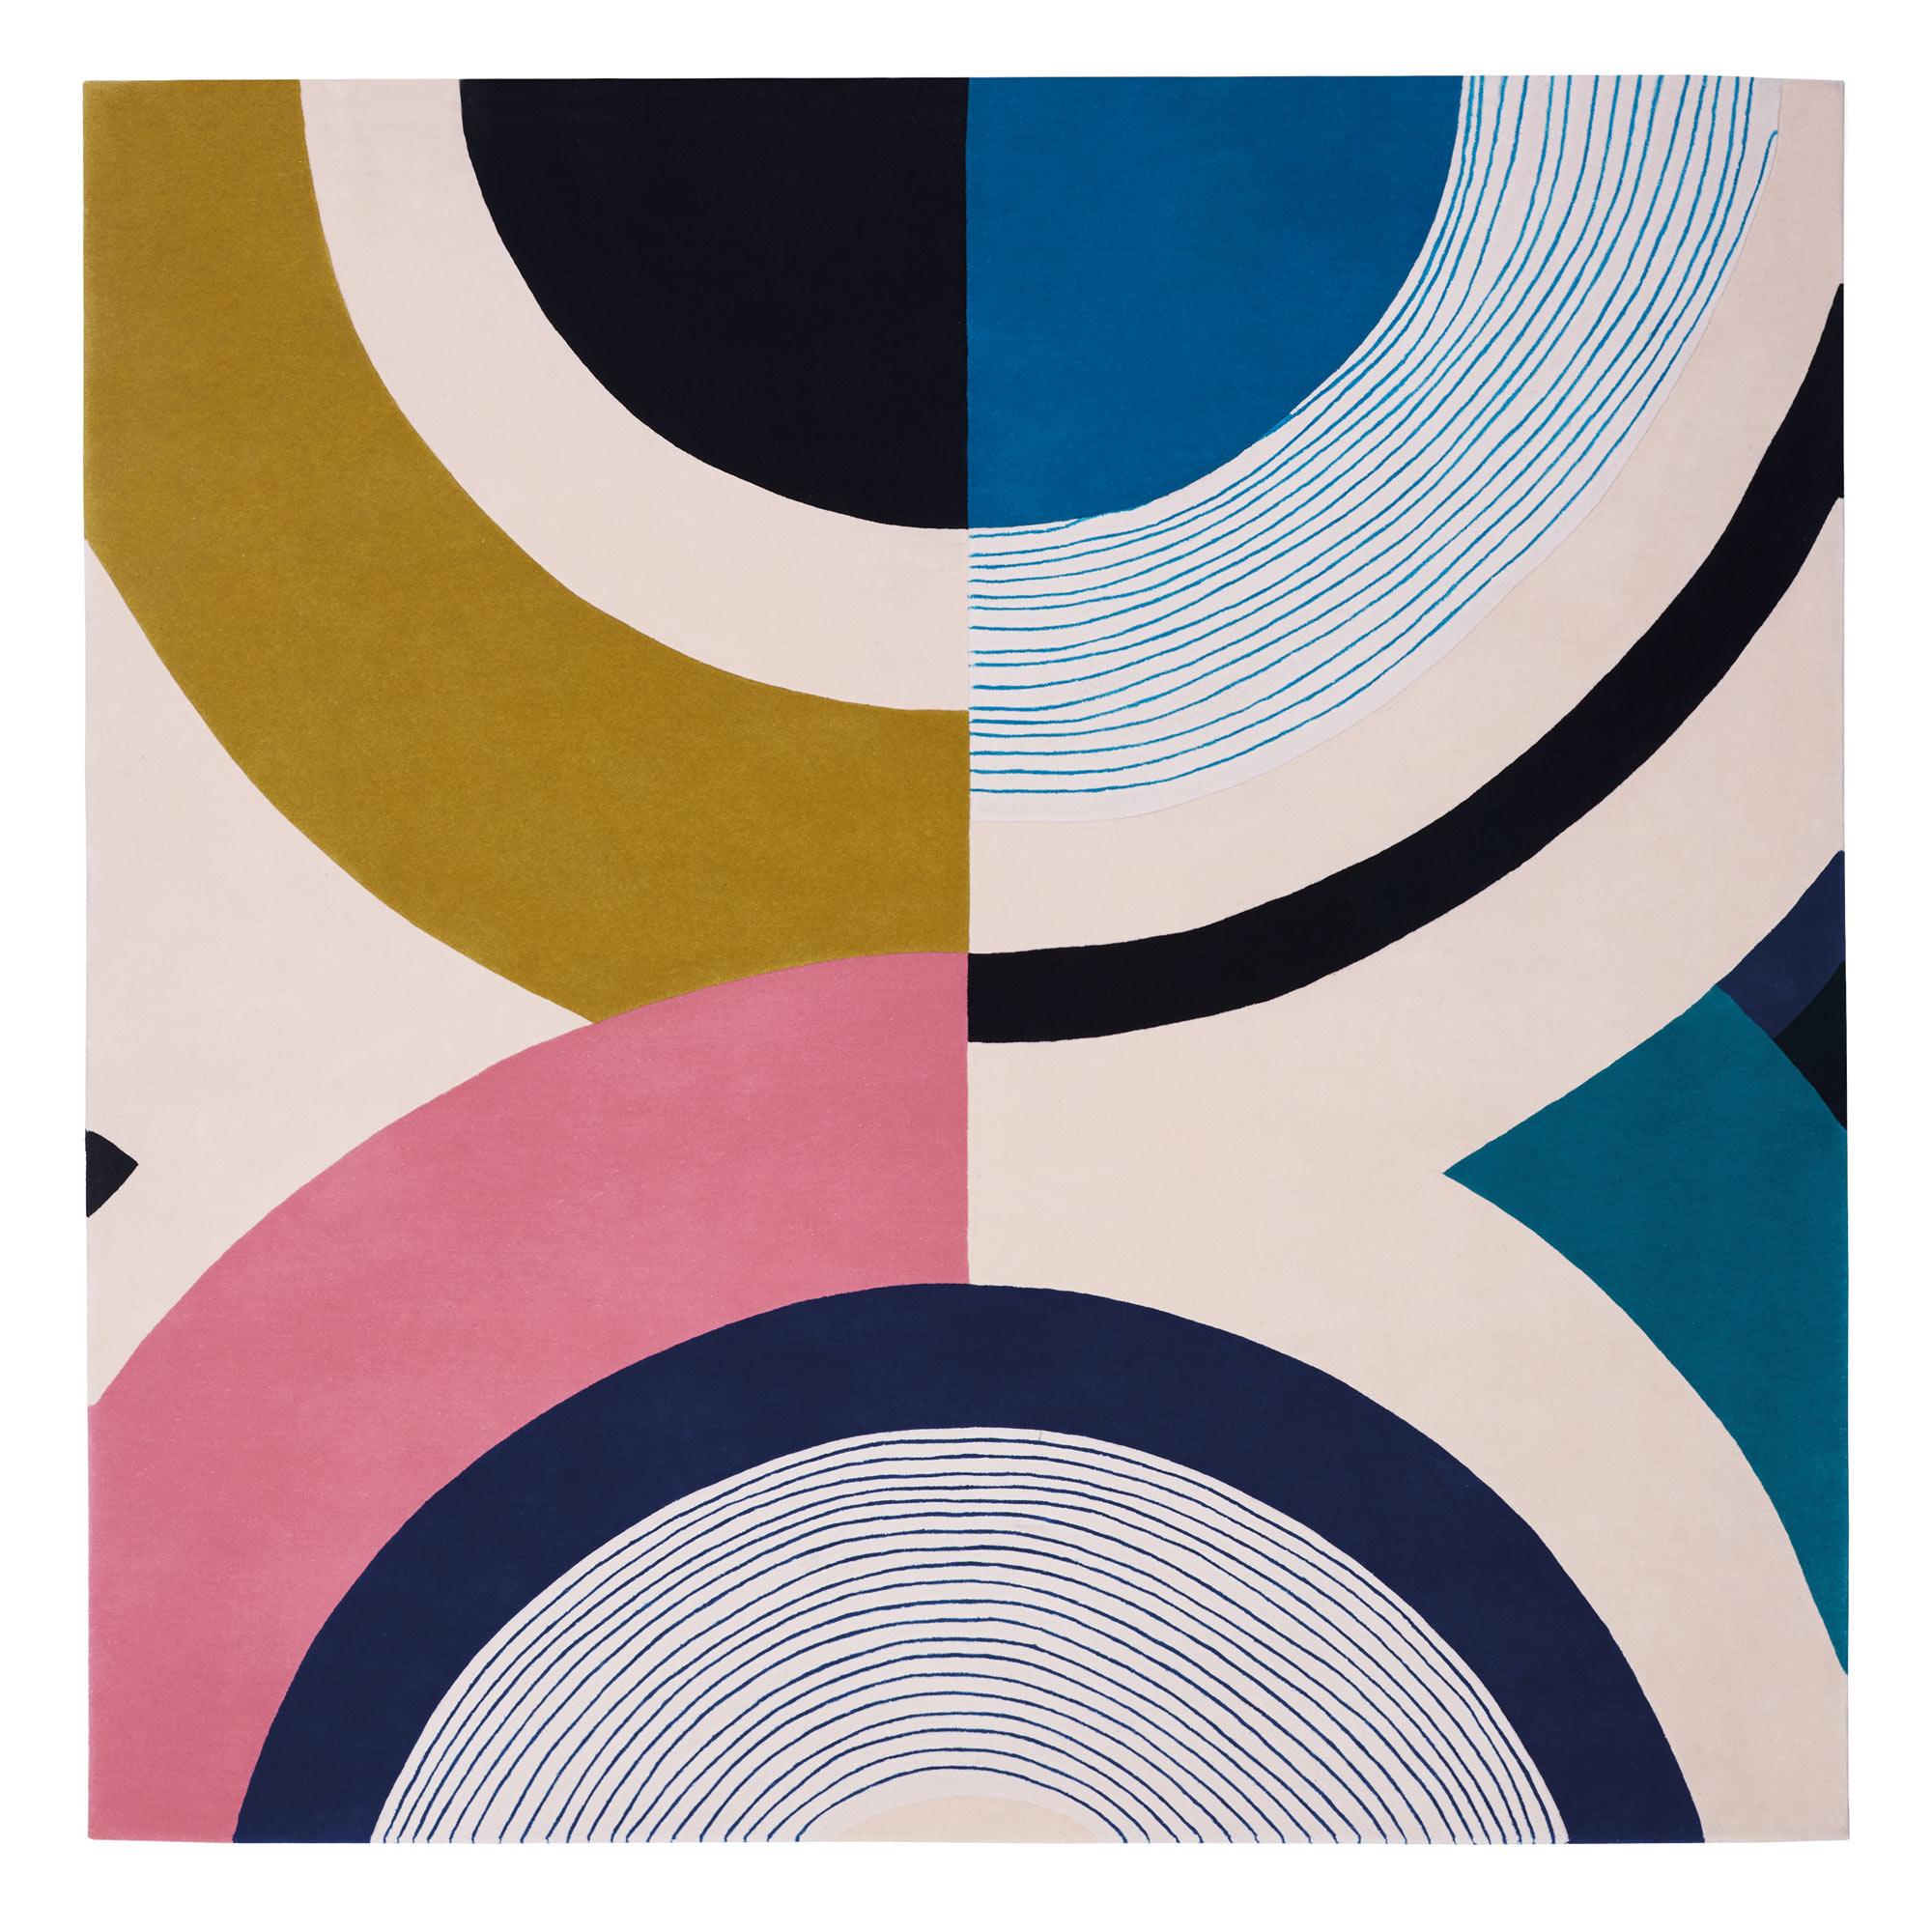 Seoul by Day N°4 teppich von Thomas Dariel
Abmessungen: T 240 x B 240 cm 
MATERIALIEN: Neuseeländische Wolle und Viskose. 
Auch in anderen Farben, Designs und Abmessungen erhältlich.


Die südkoreanische Hauptstadt ist bekannt für ihre